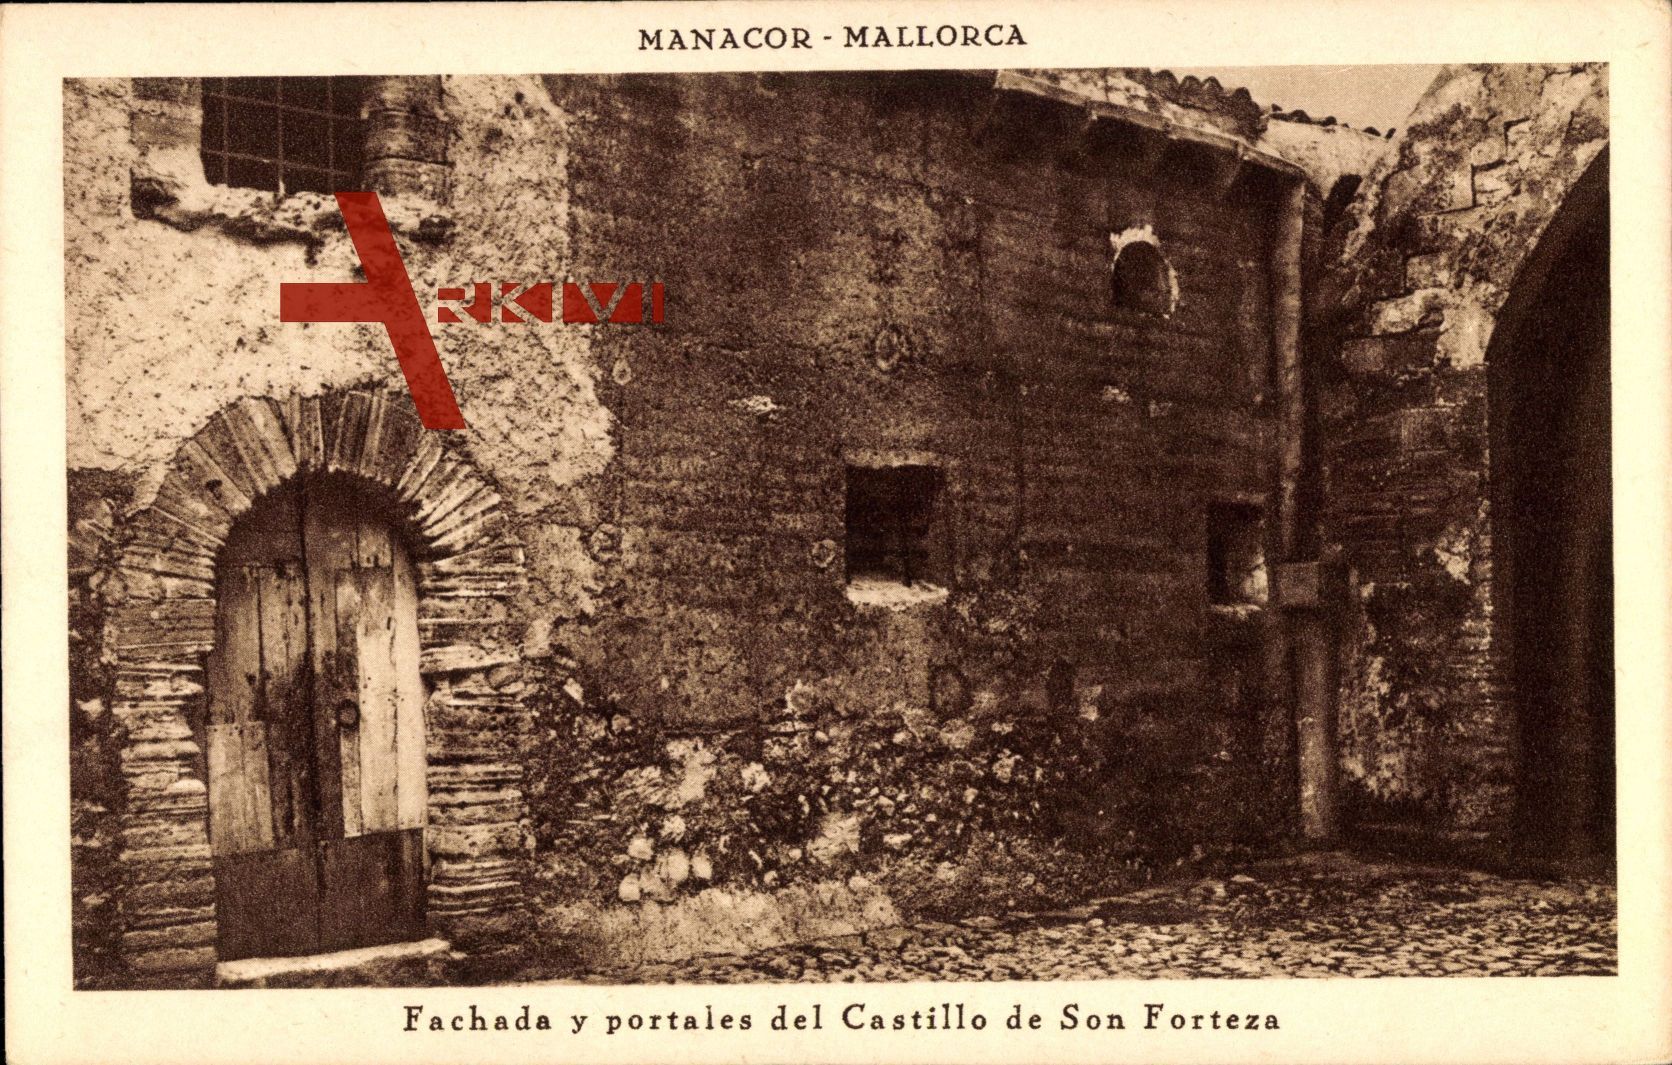 Manacor Mallorca Balearische Inseln, portales del Castillo de Son Forteza